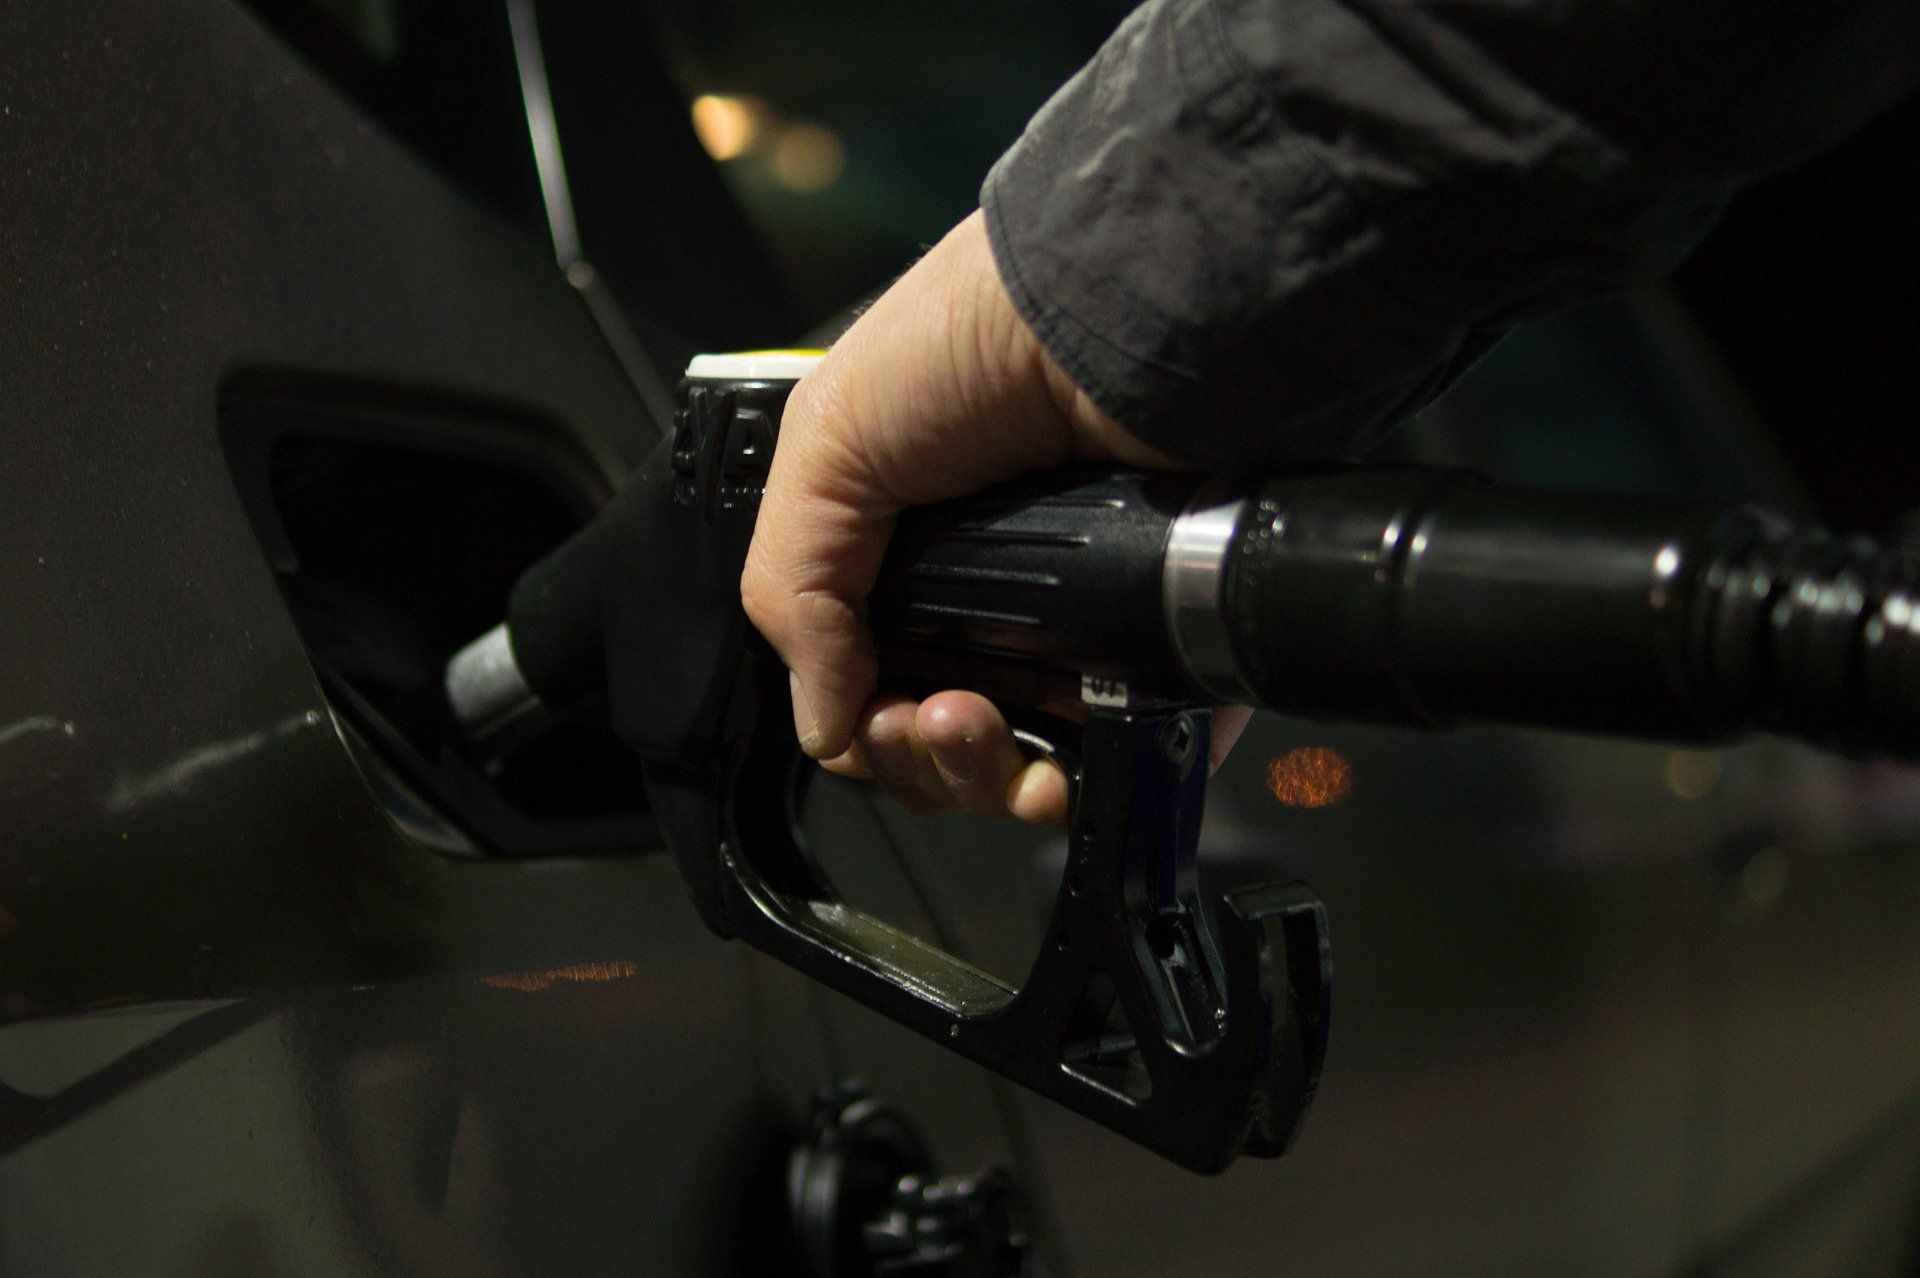 Fuel price August 3, 2022: Petrol Rs 106.31, diesel Rs 94.27 in Mumbai